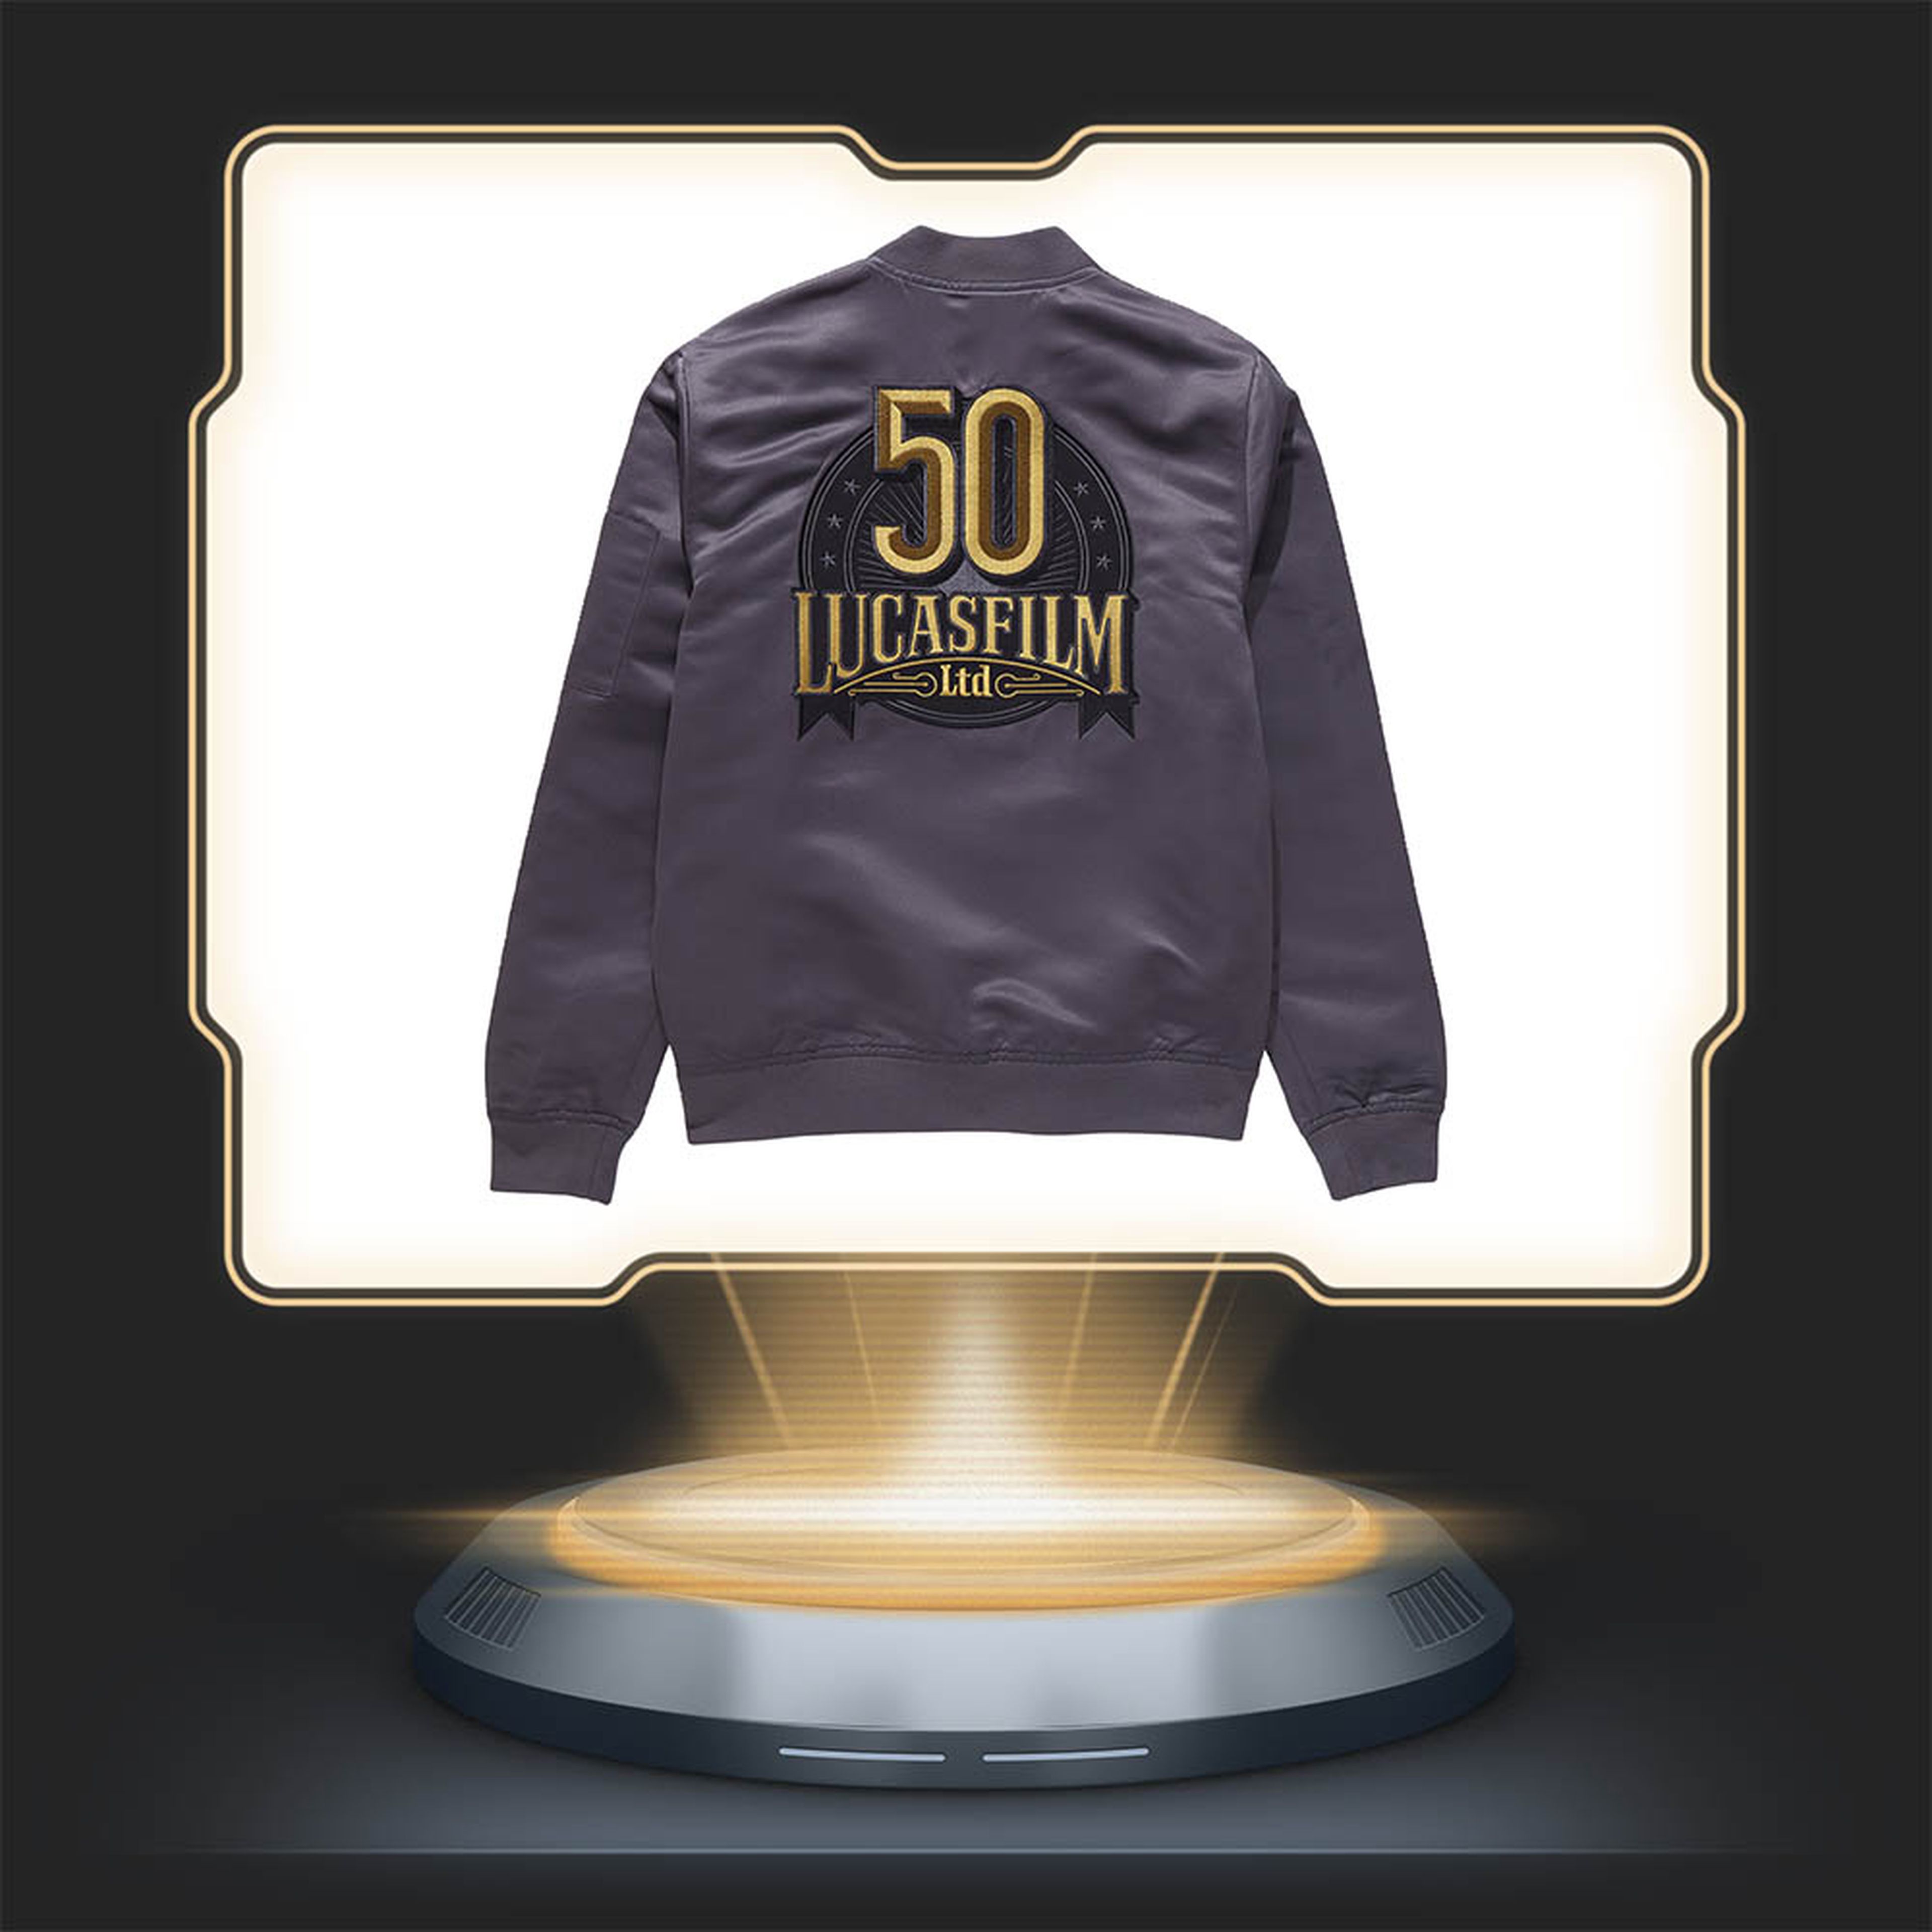 Lucasfilm 50 aniversario